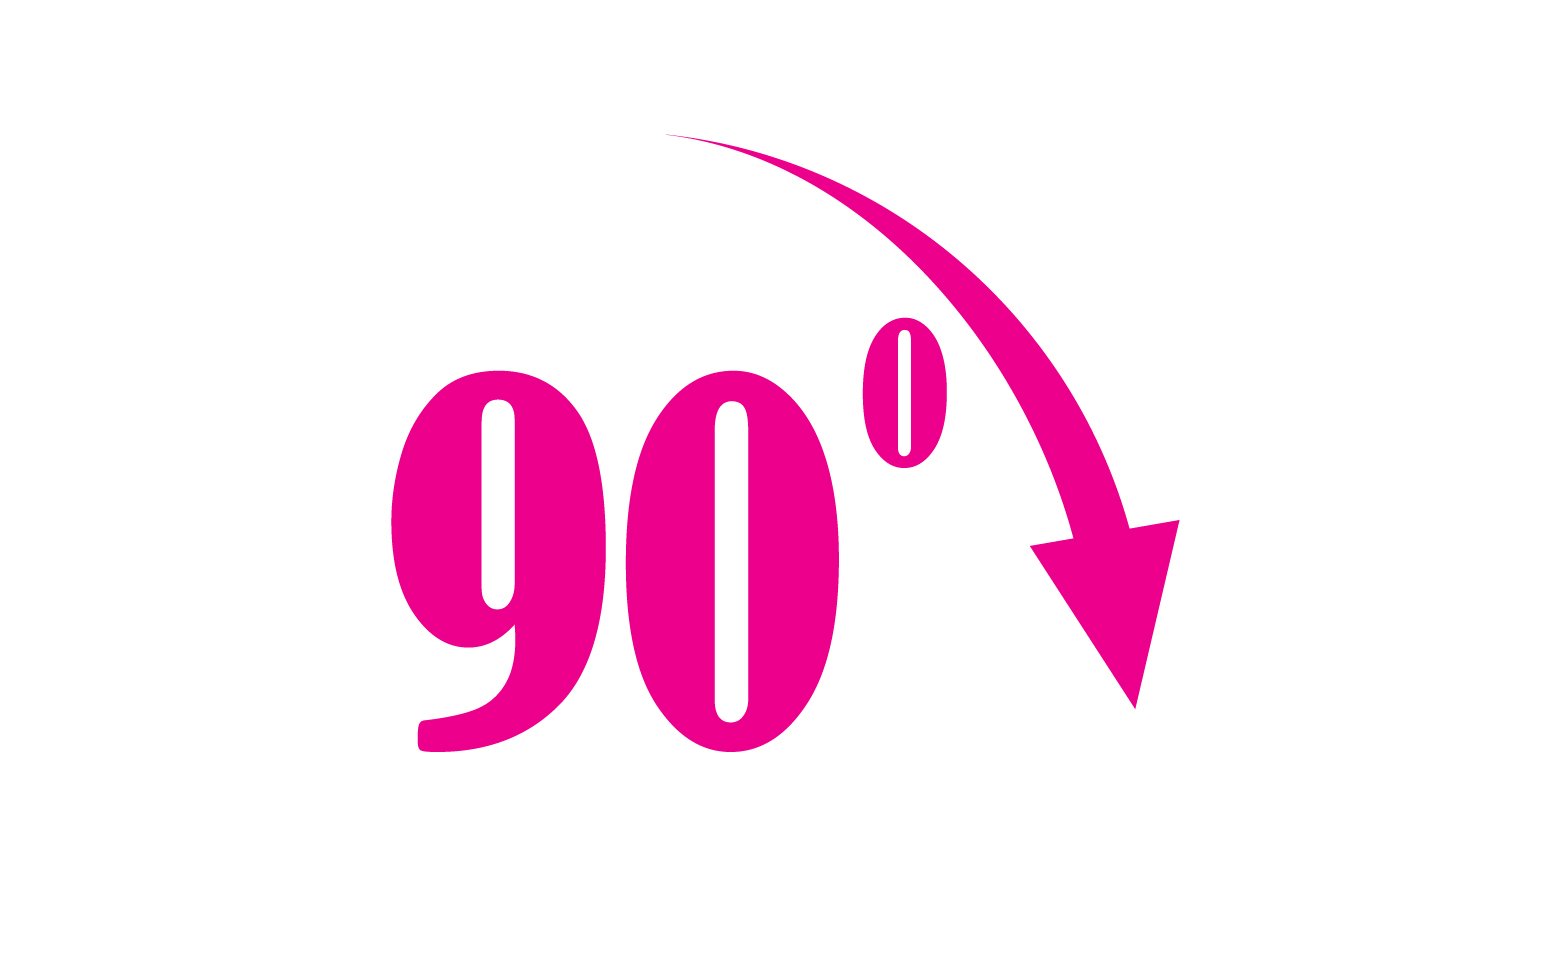 90 degree angle rotation icon symbol logo v21